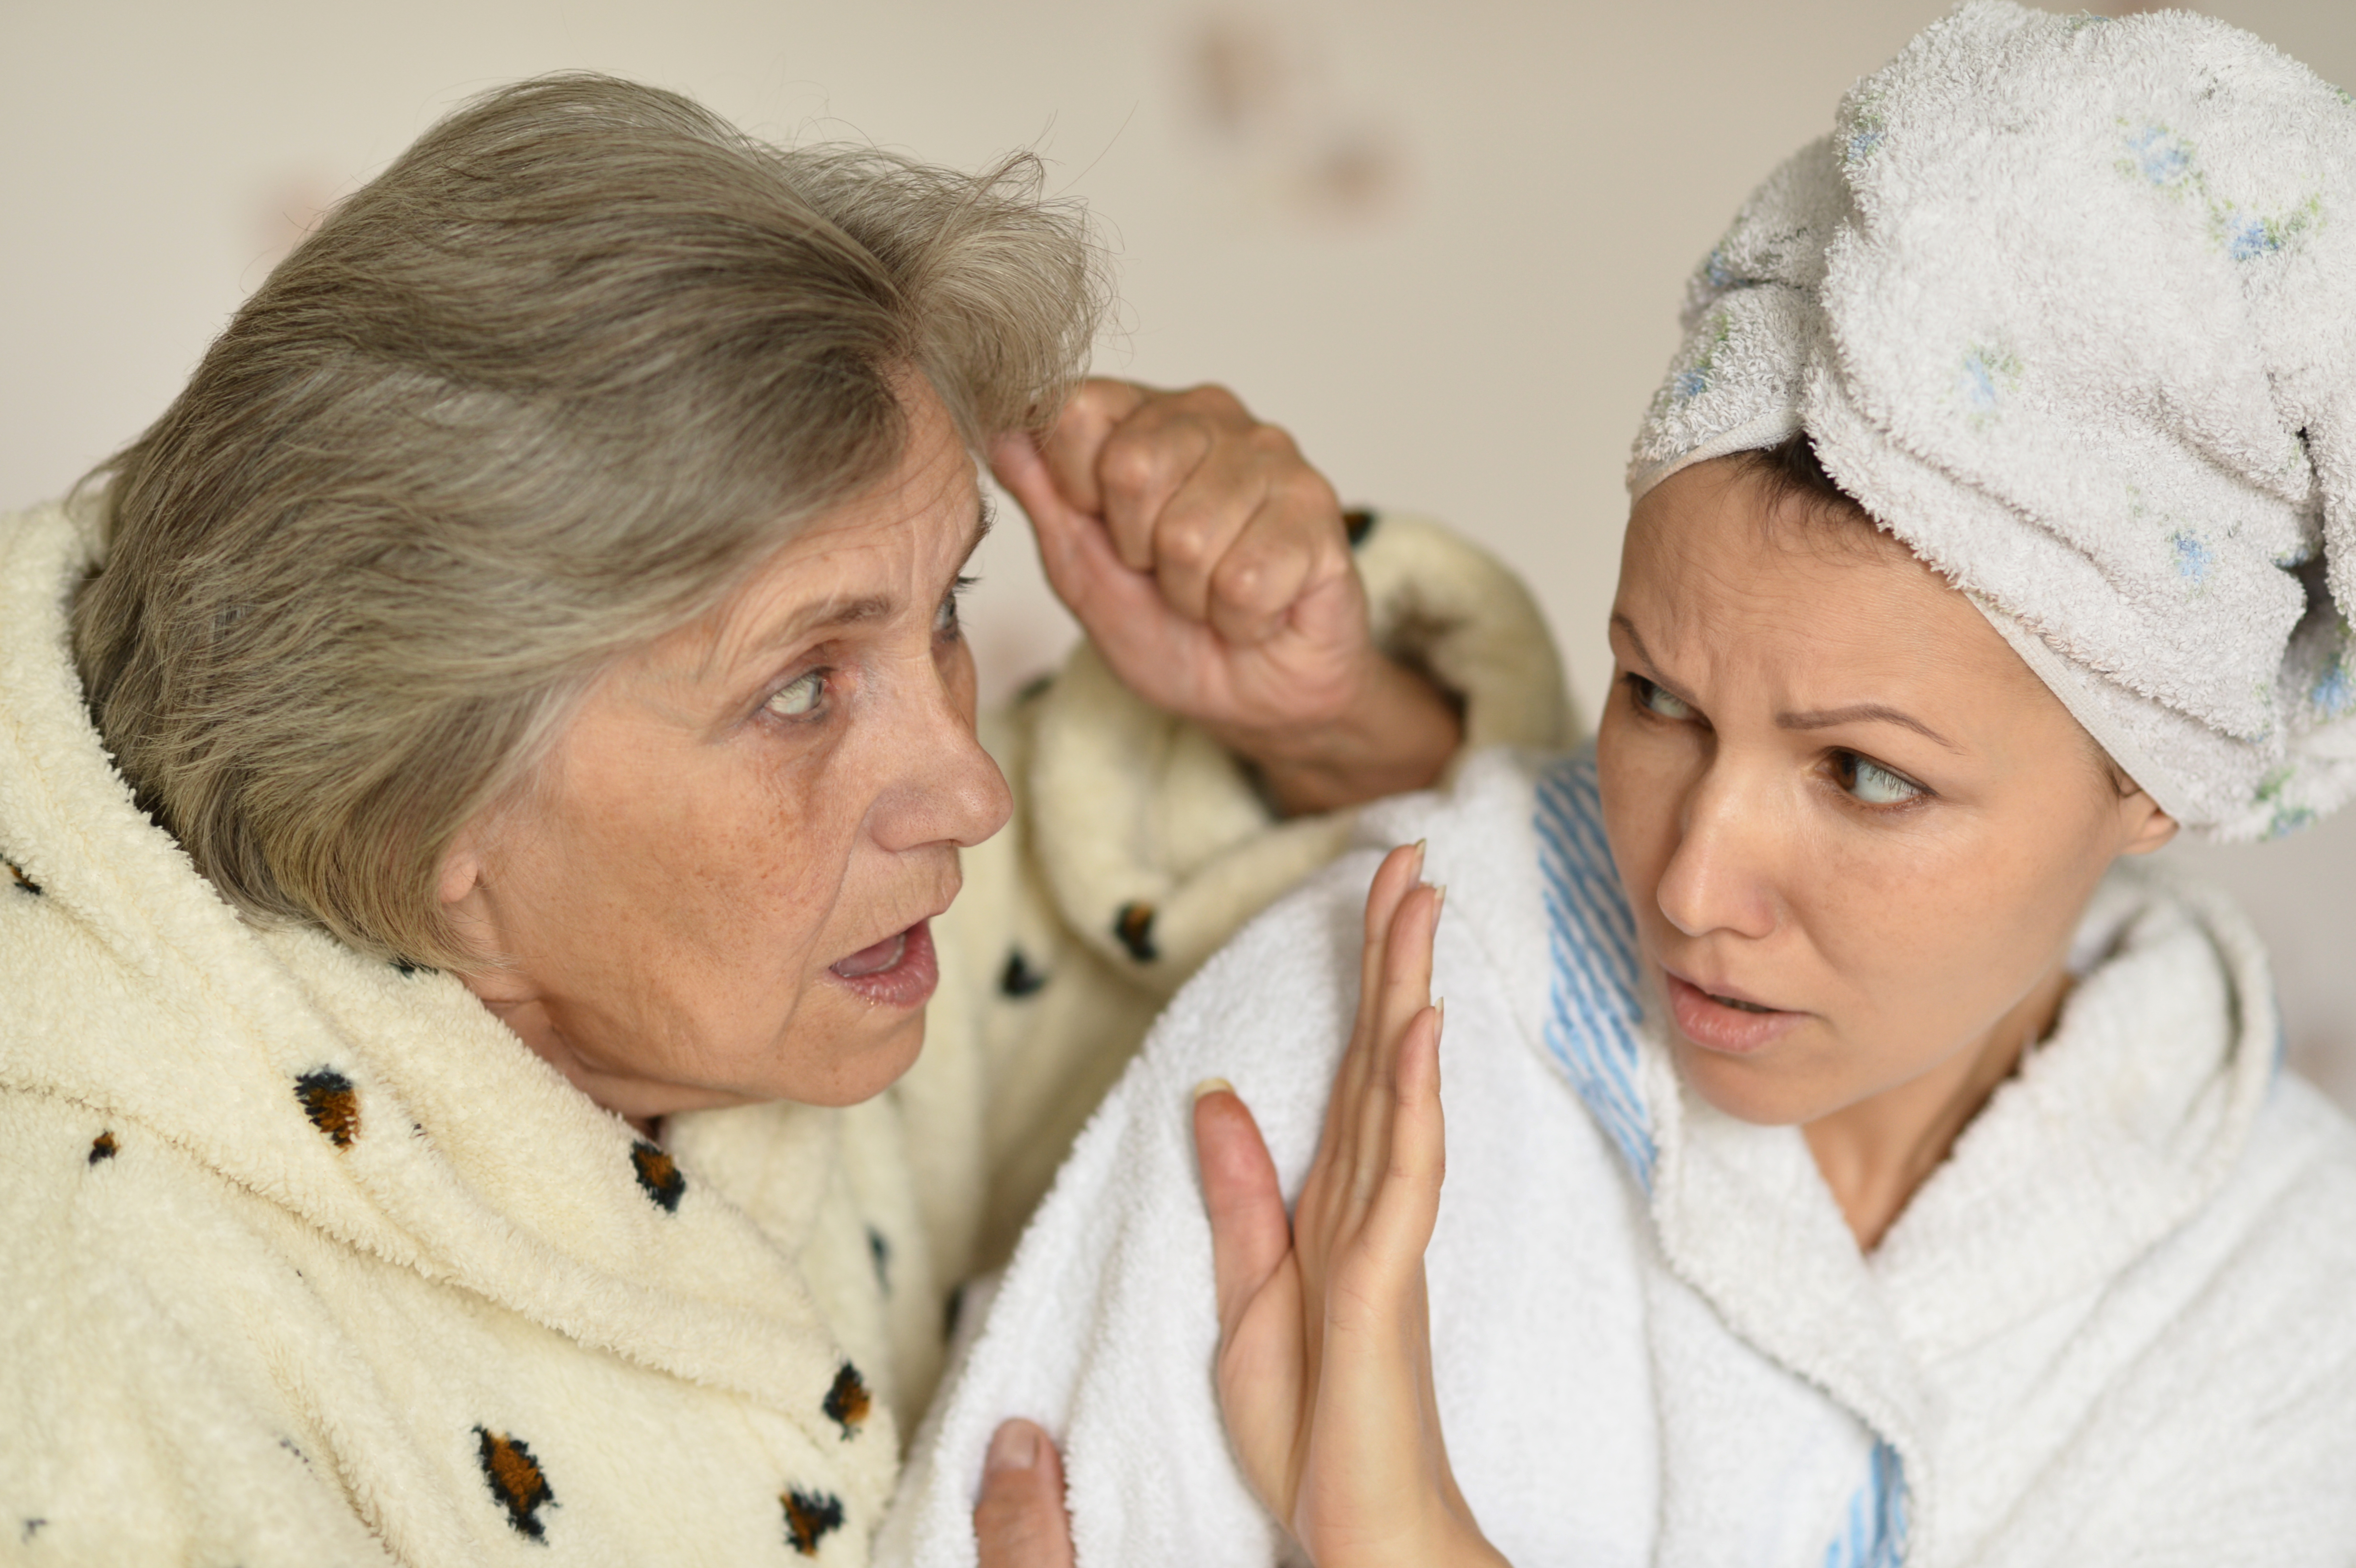 Une femme qui essaie d'éviter sa belle-mère en colère | Source : Shutterstock